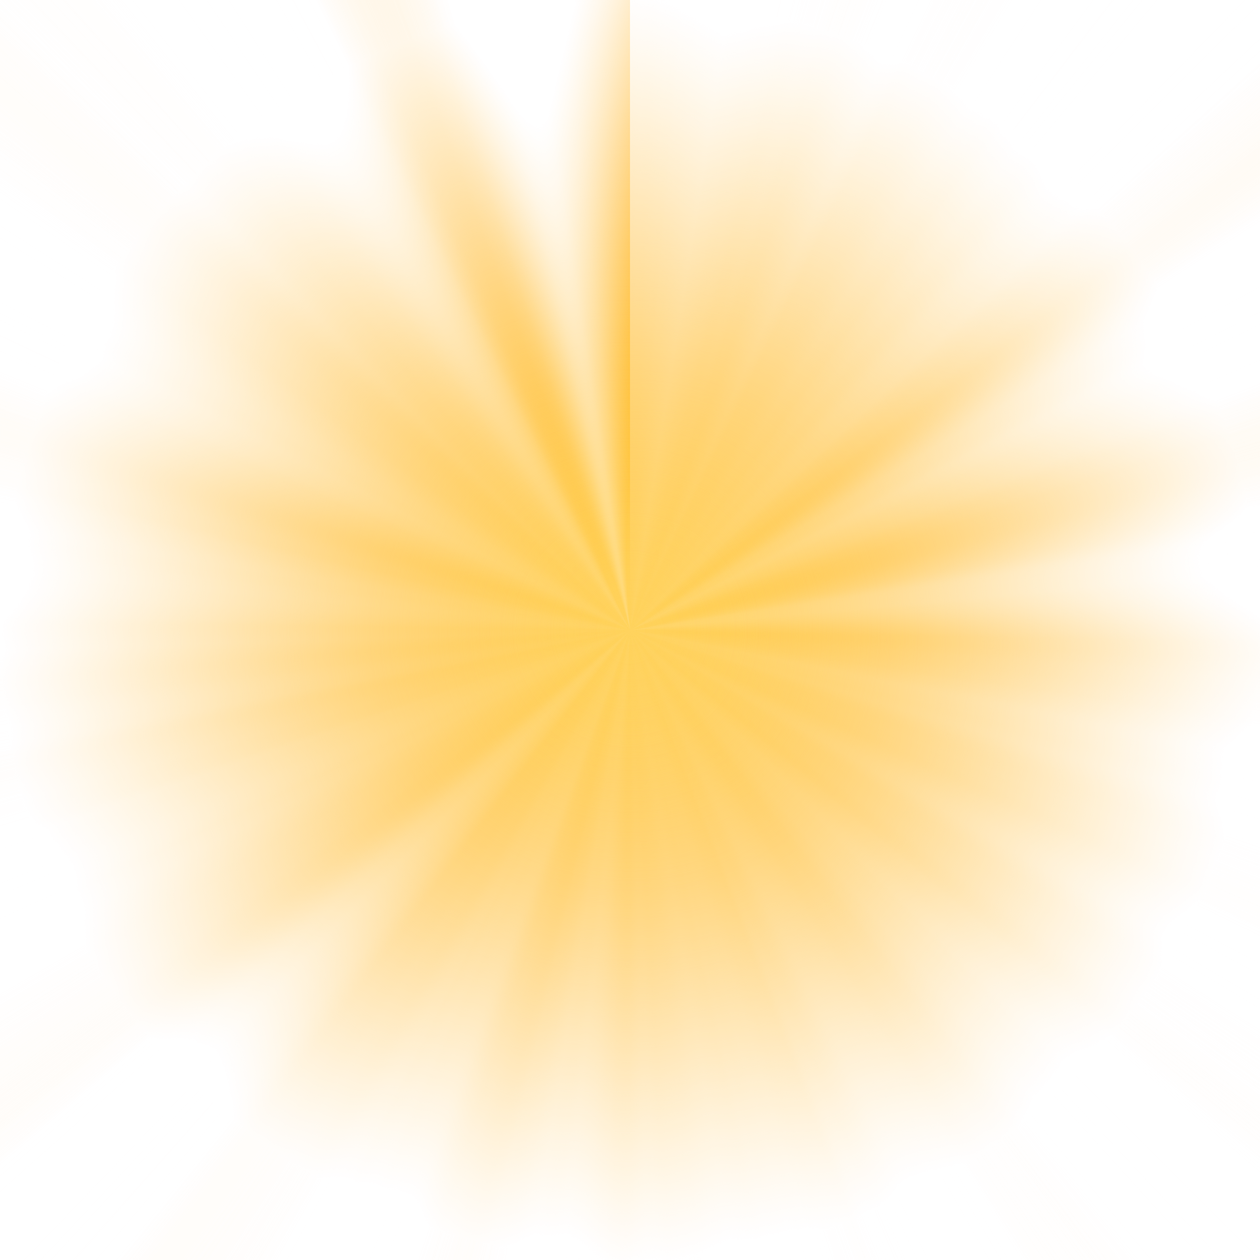 Abstract Sunburst sun rays